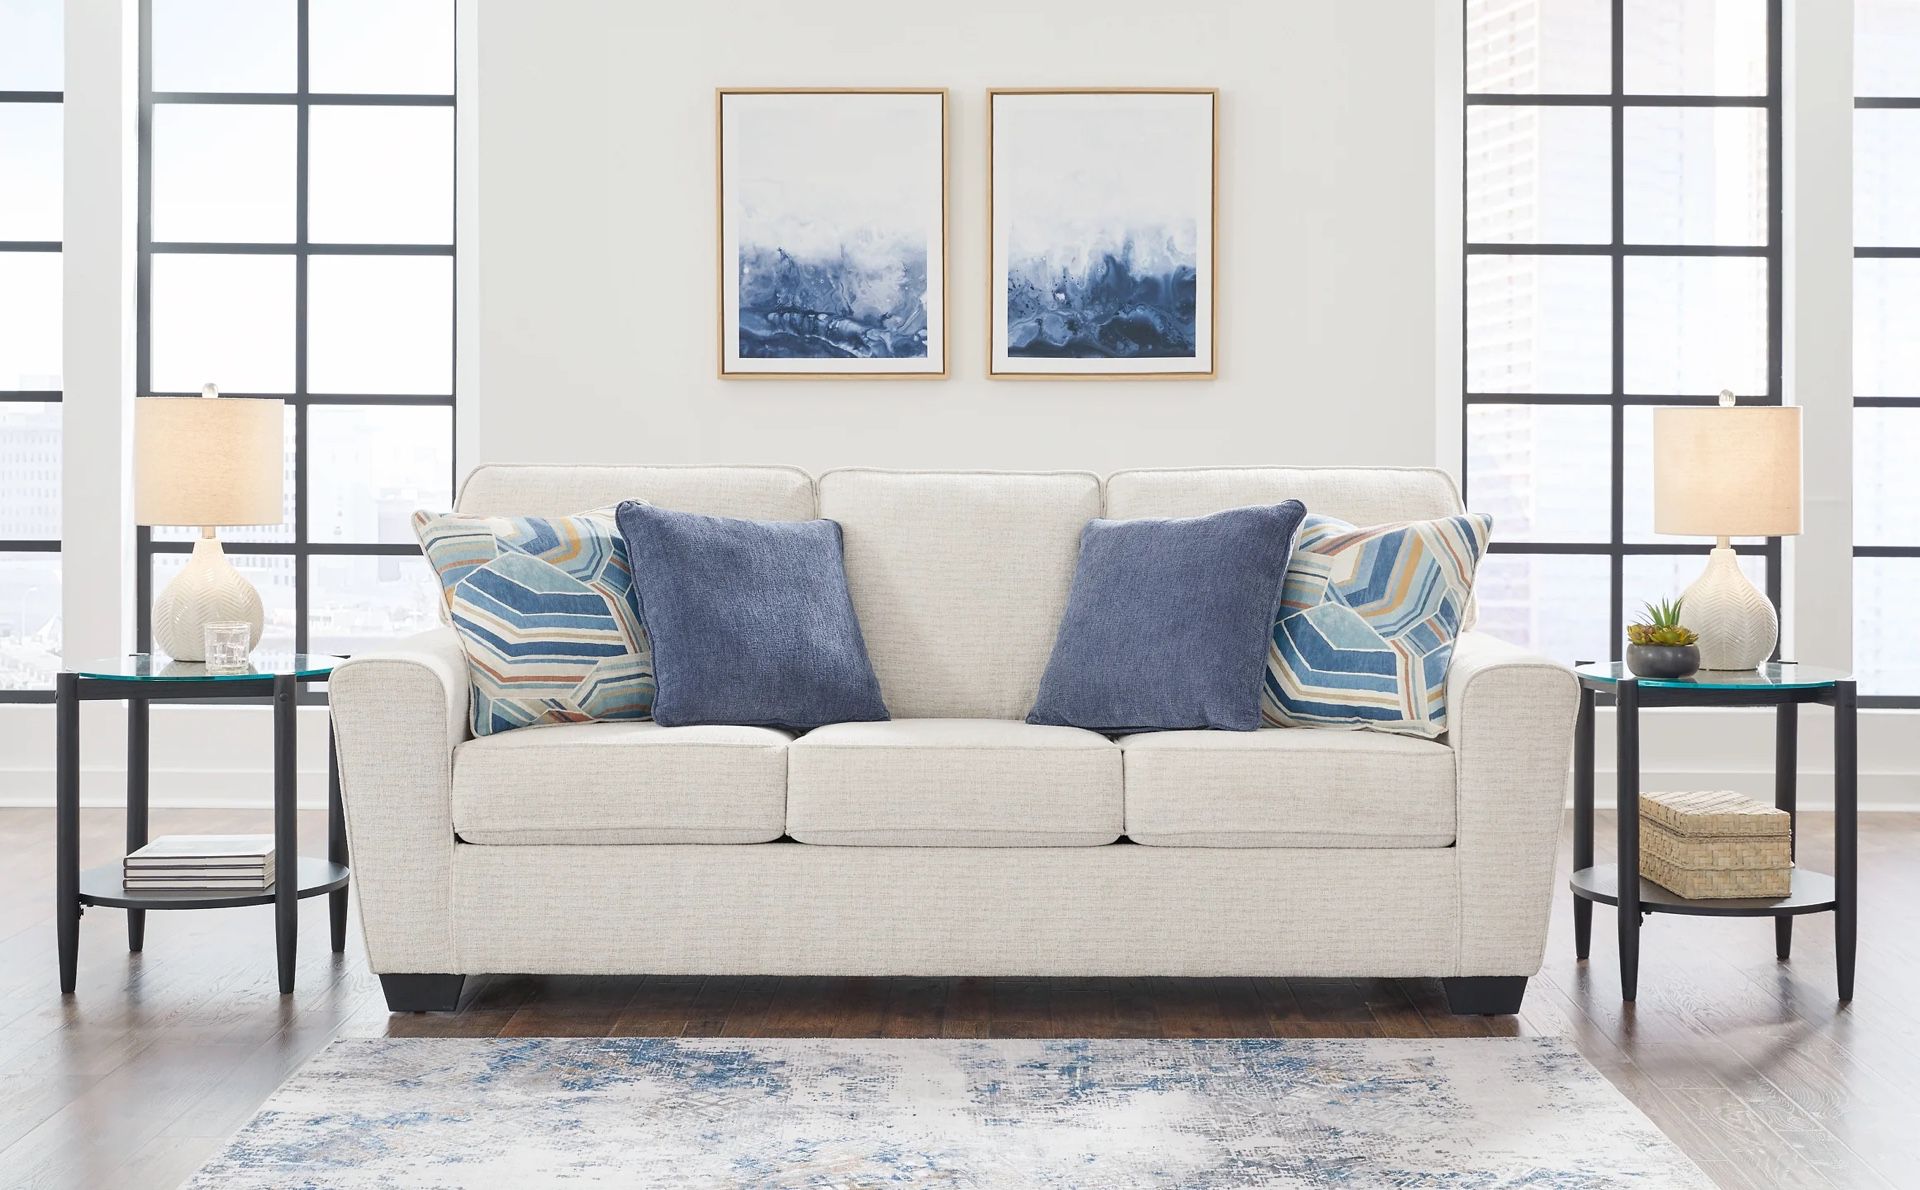 New Cashton Sofa 🛋 $459